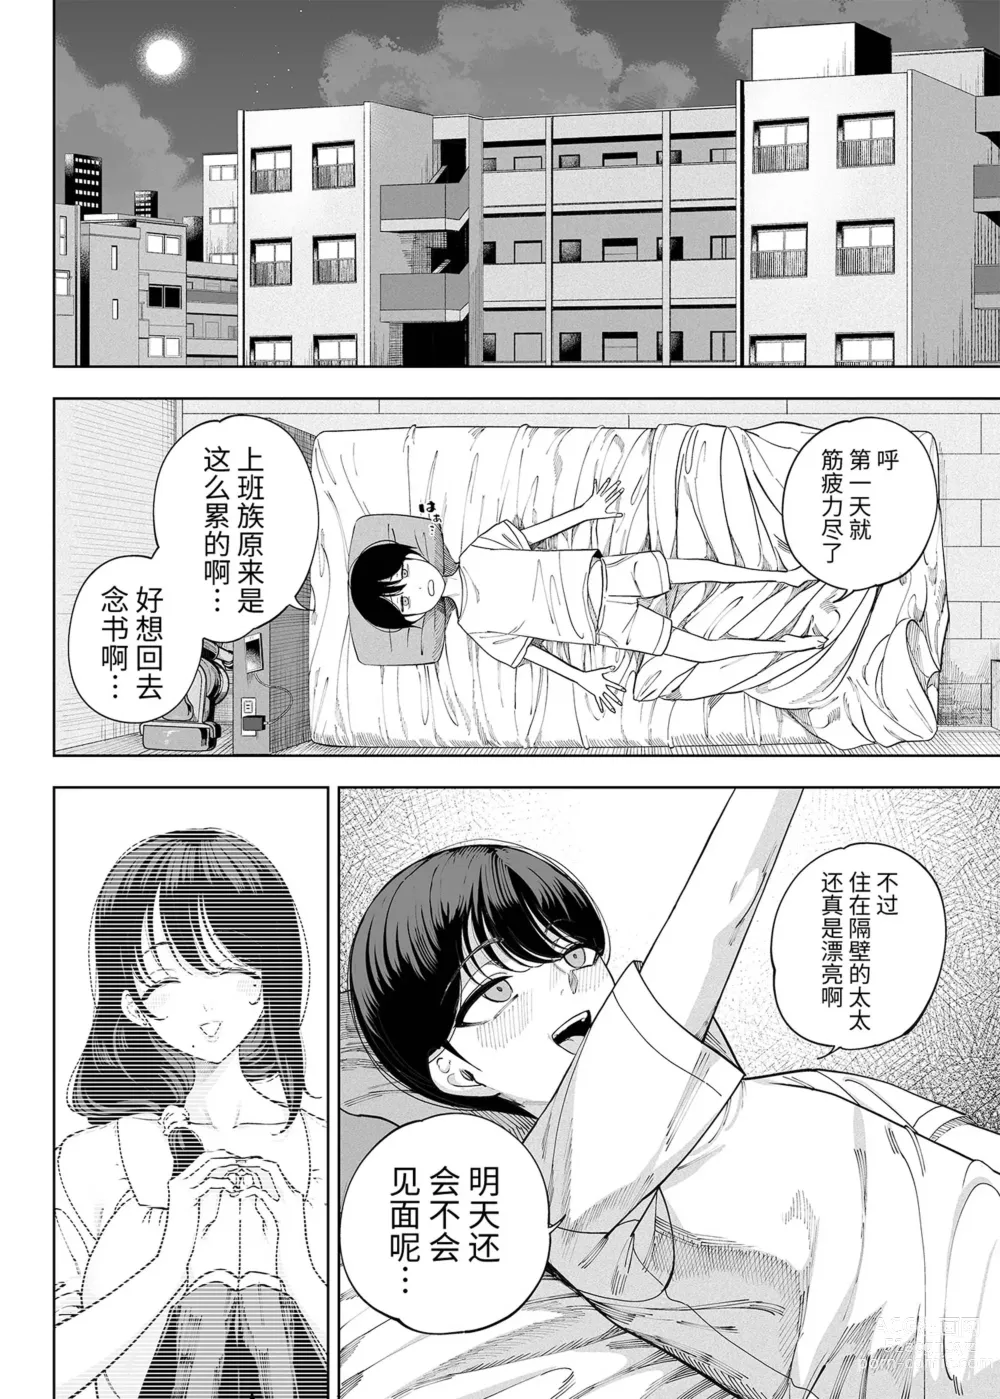 Page 7 of doujinshi 淫魔巣窟 僕の邻人は淫魔亲子